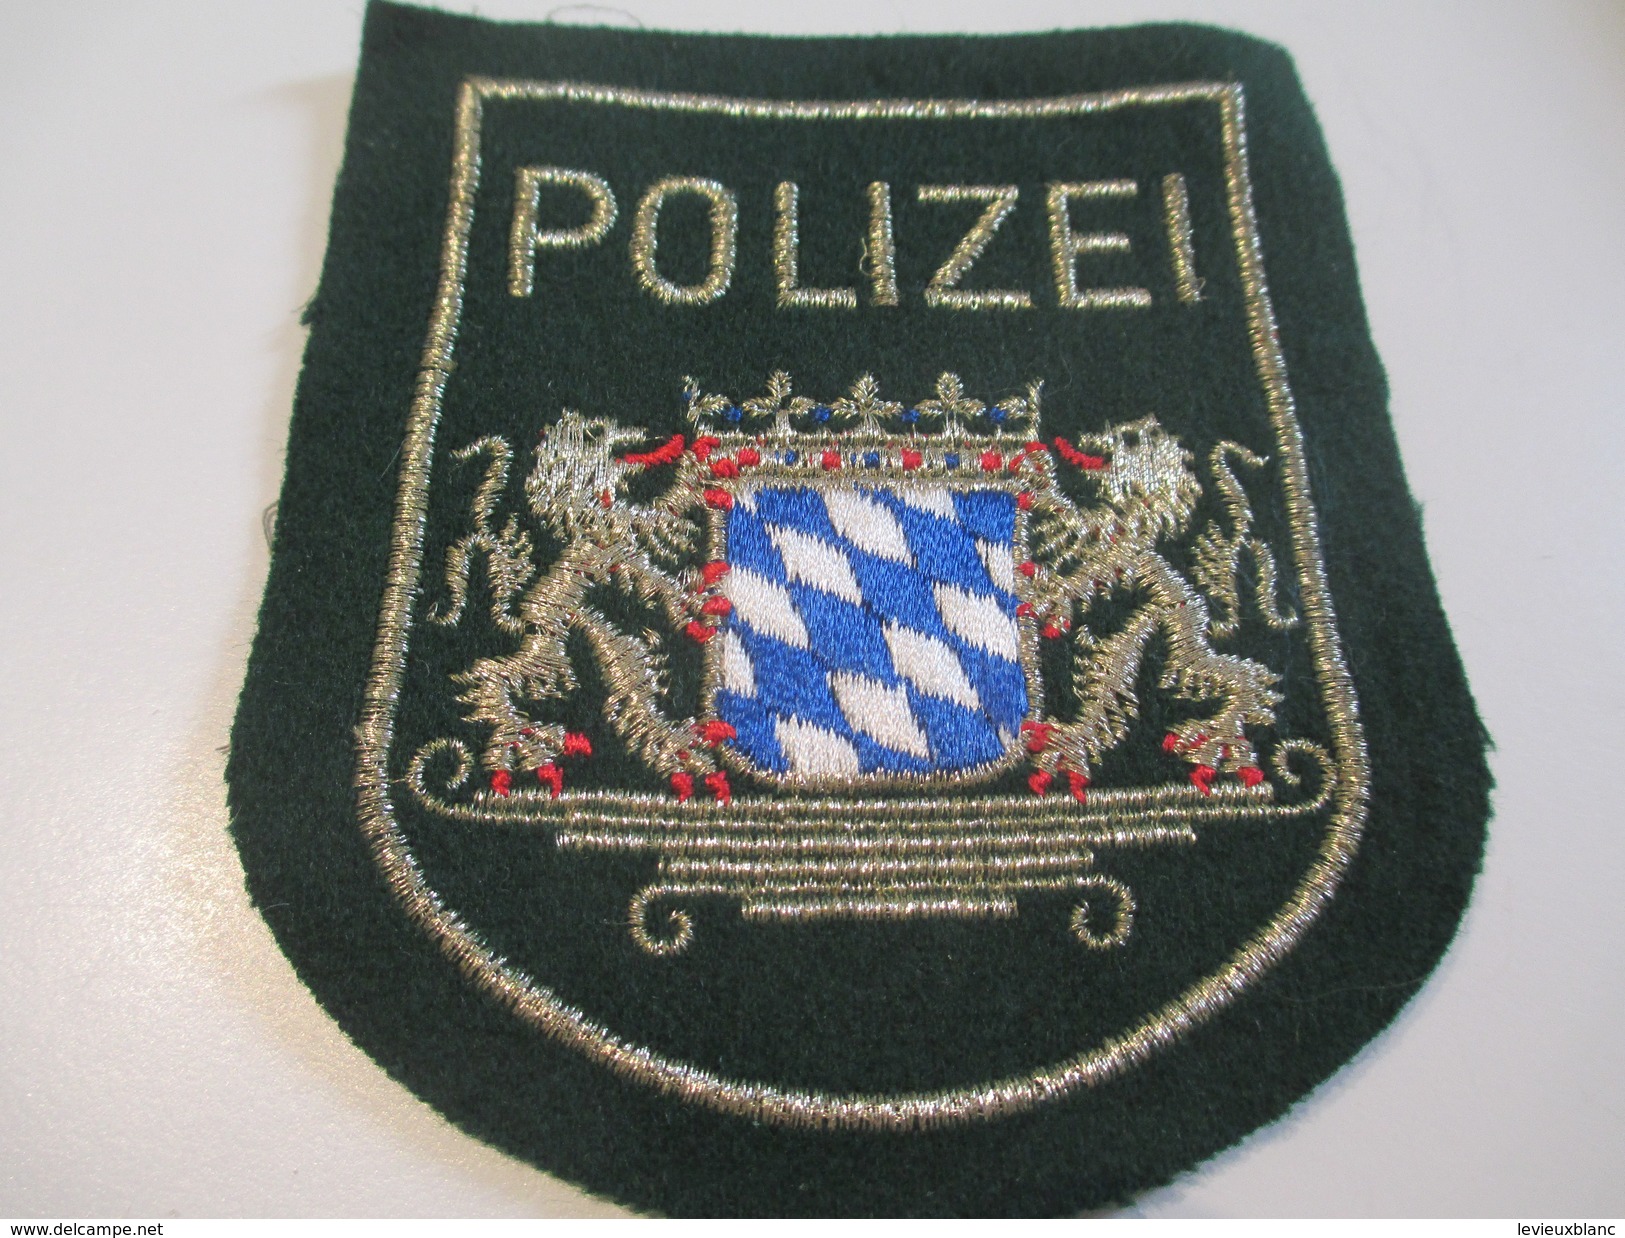 Ecusson Tissu Ancien /Police  / ALLEMAGNE/Rheinland/Années 1970 -1980  ET125 - Patches